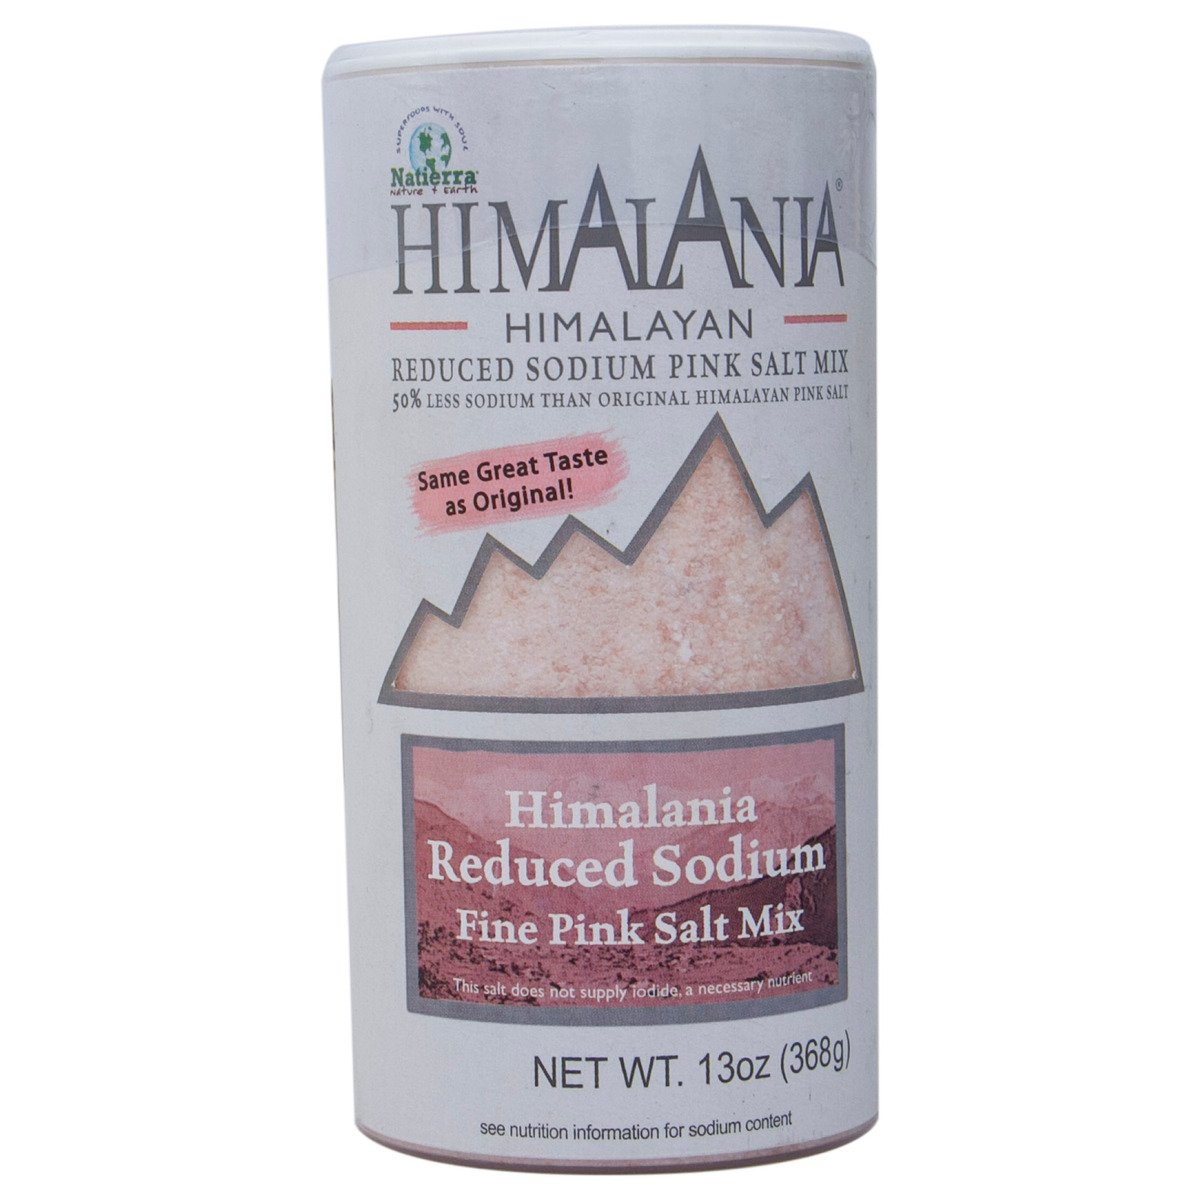 Himalania Himalayan Reduced Sodium Fine Pink Salt Mix 368 g